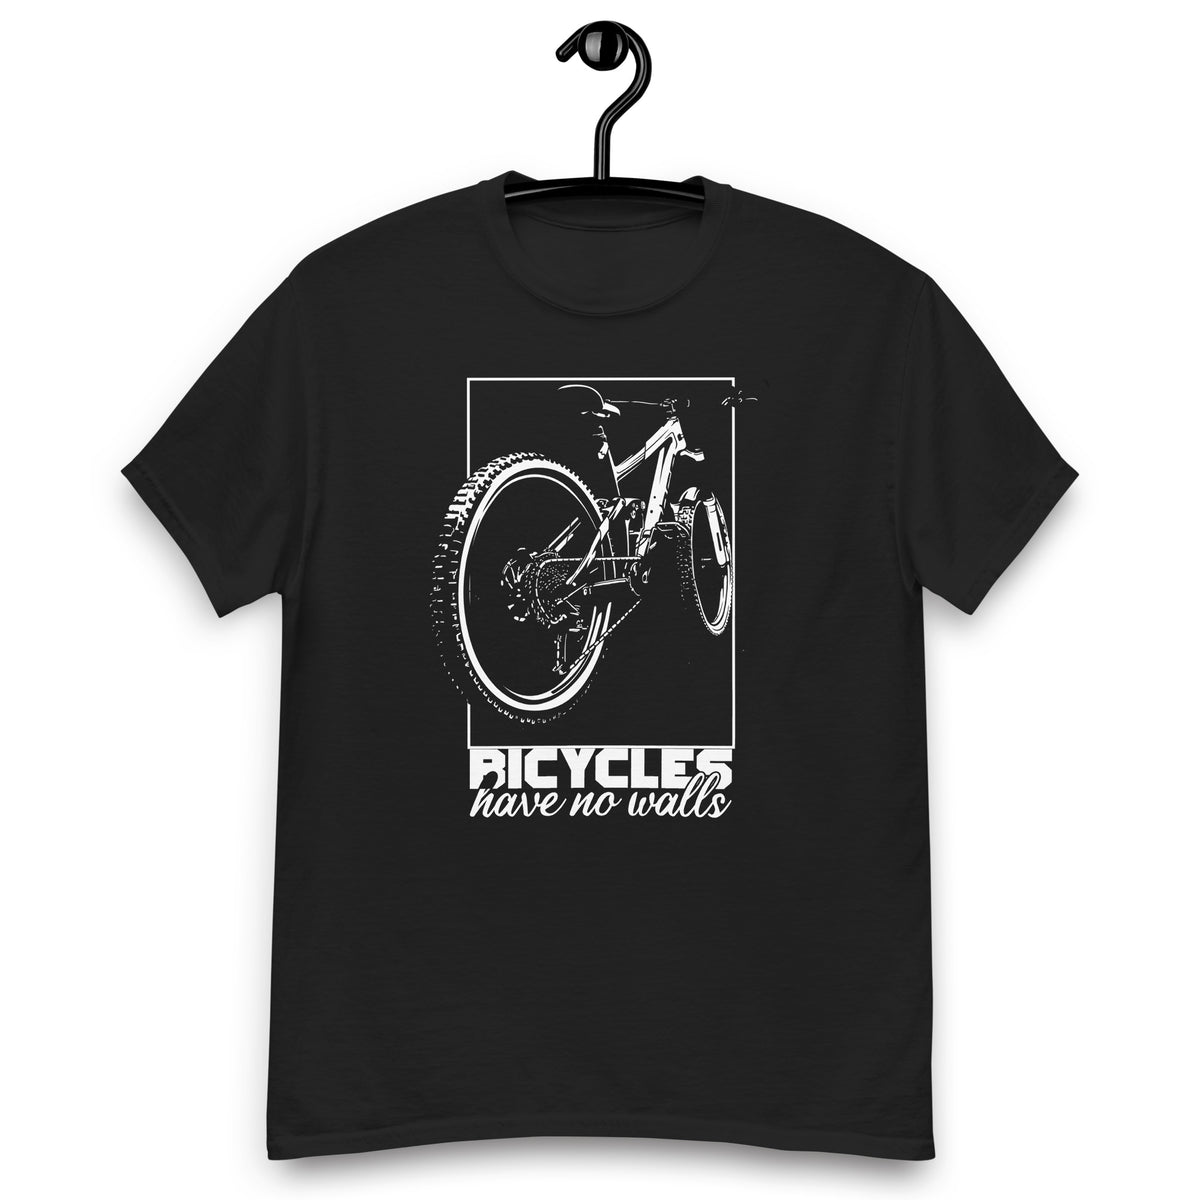 Fahrrad Shirts " Bicycles have no Walls "